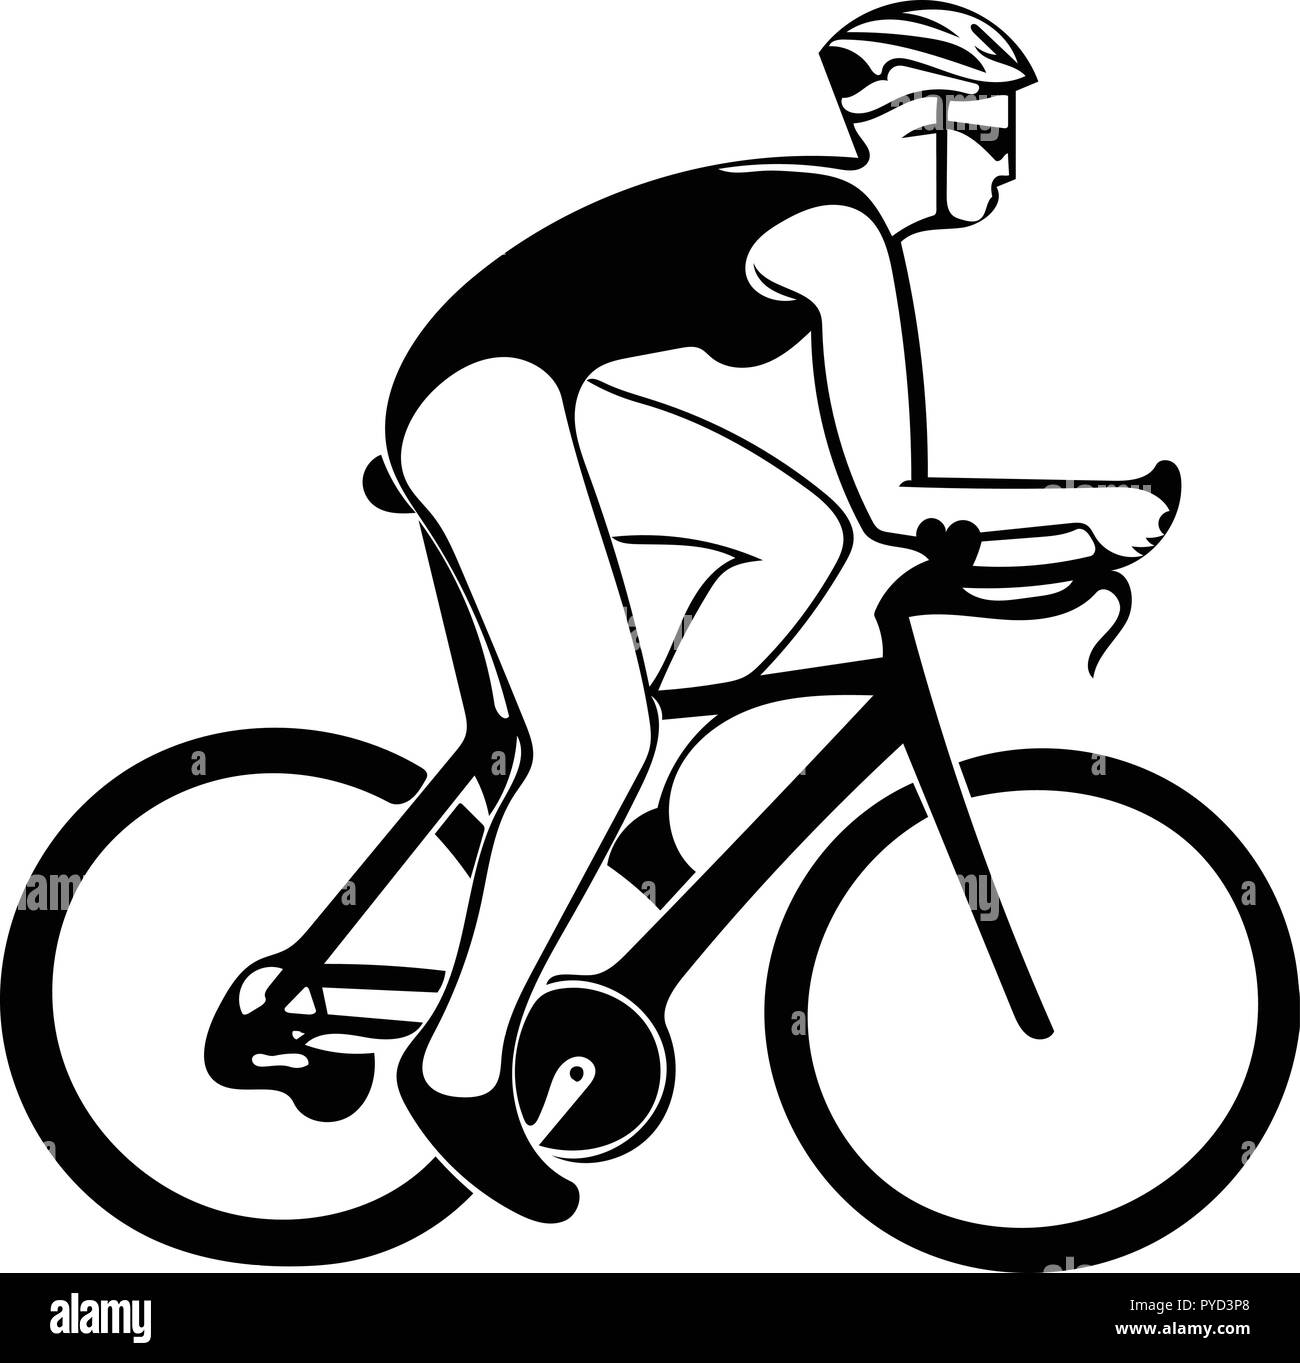 Graphique vectoriel monochrome de triathlète dans le triathlon vélo Femme de profil. Illustration de Vecteur